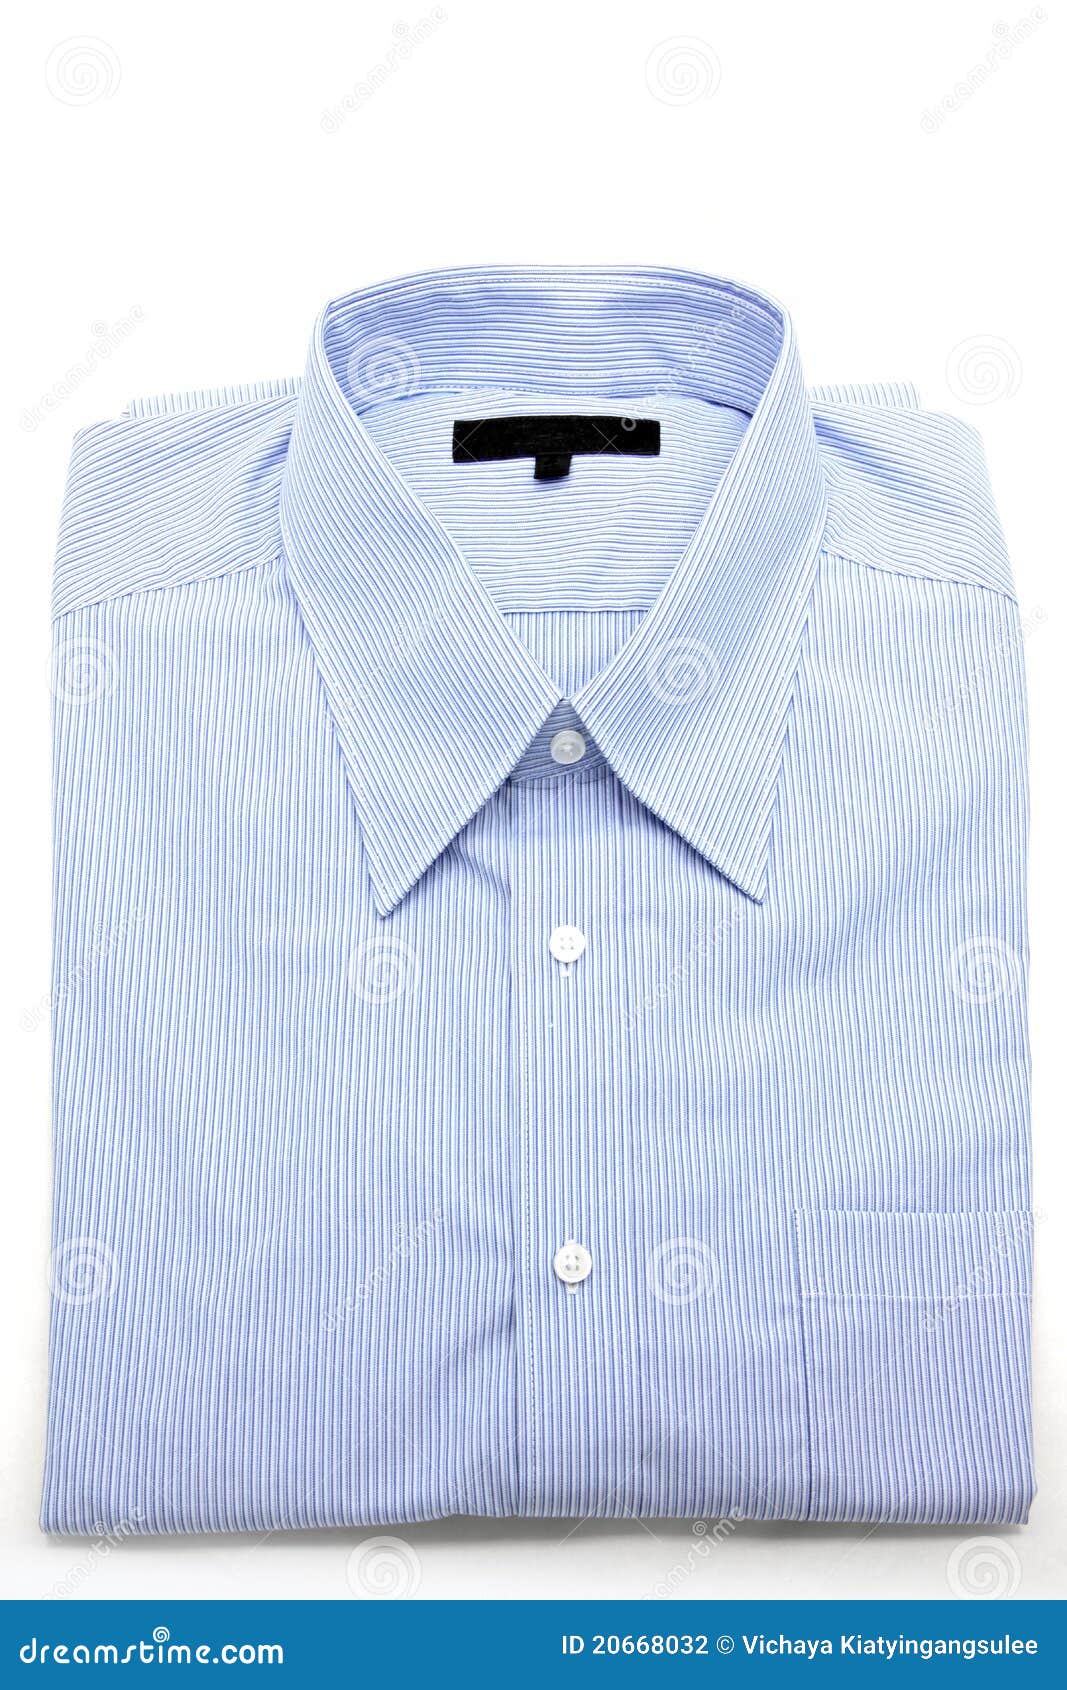 Blue shirt stock photo. Image of businessman, dress, clothing - 20668032